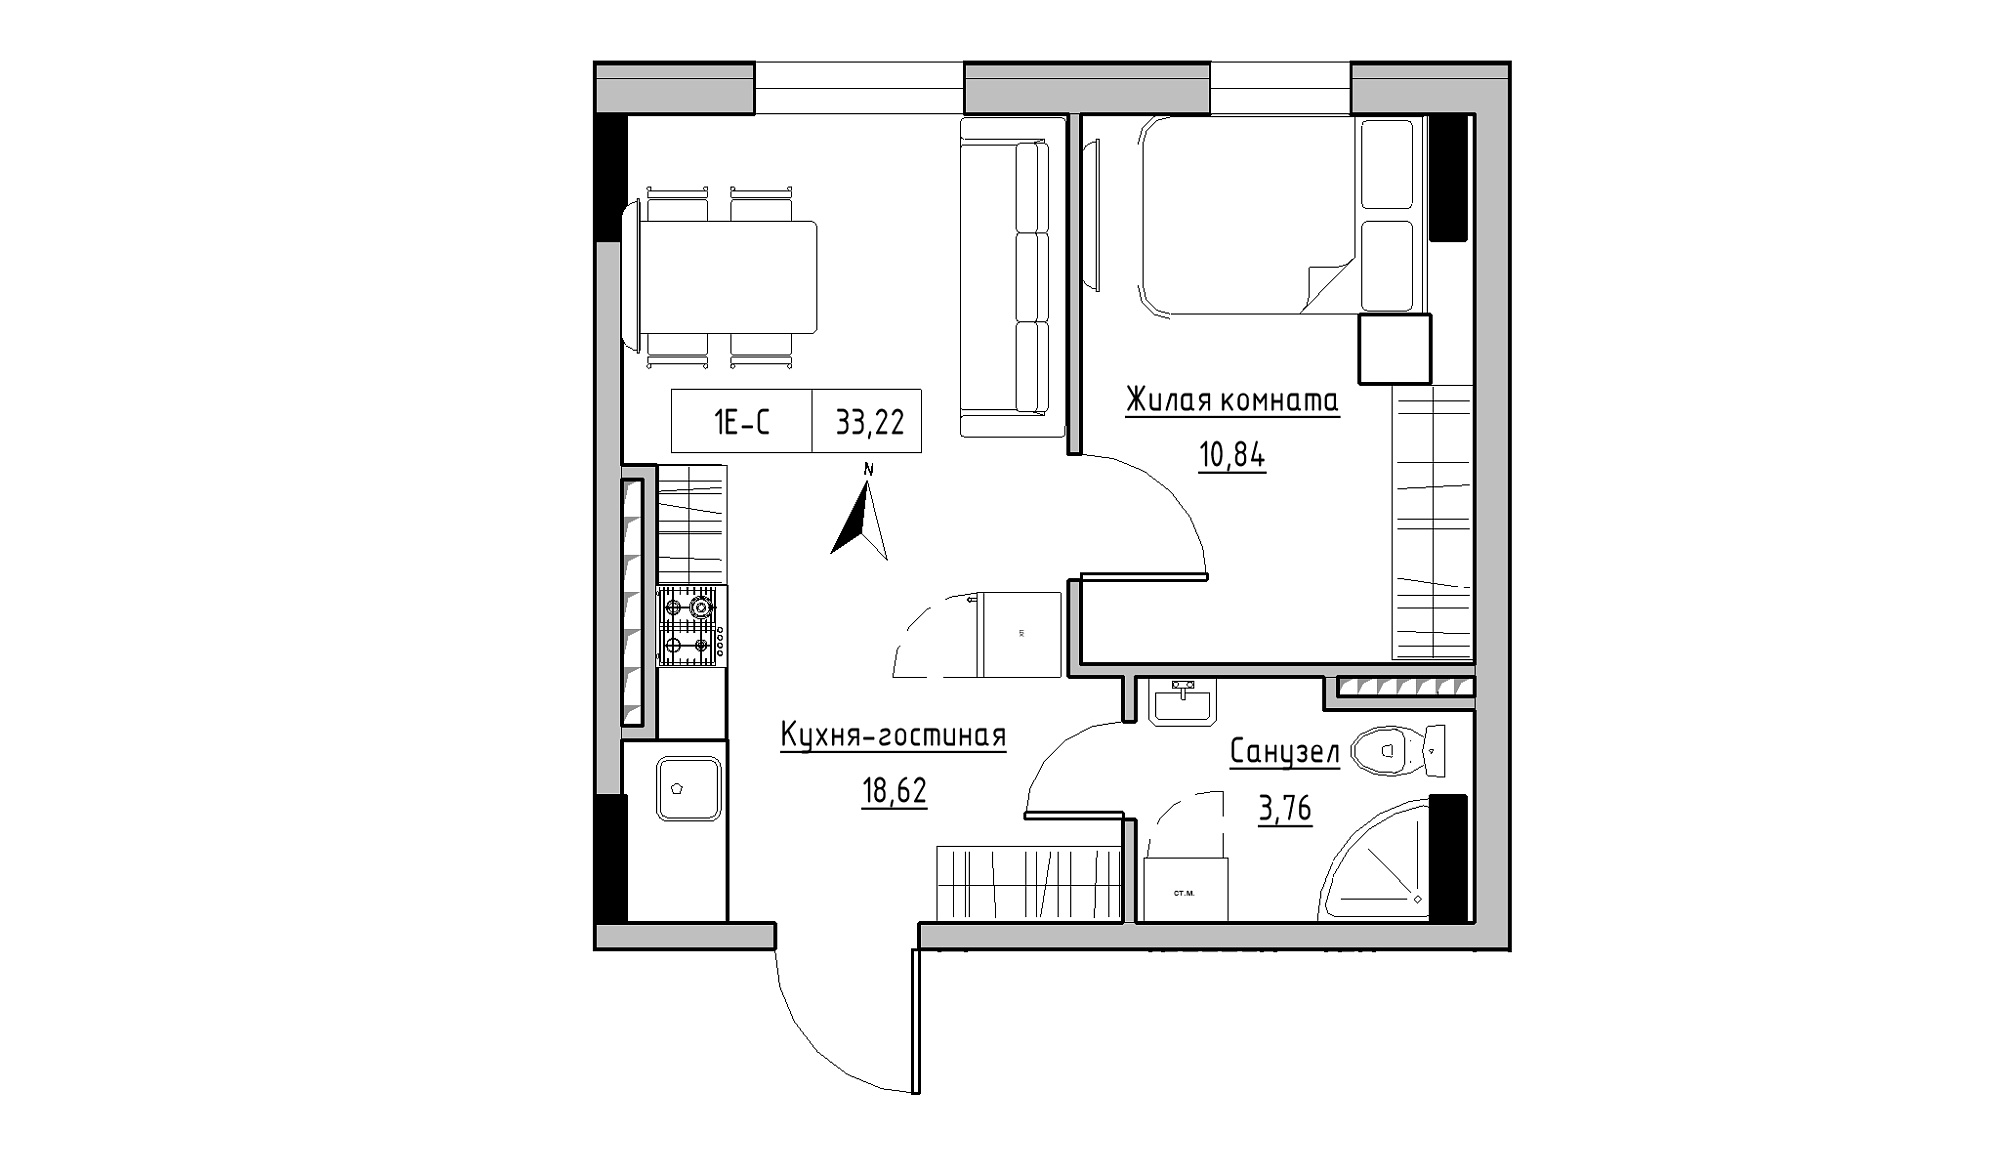 Планировка 1-к квартира площей 33.22м2, KS-025-05/0011.